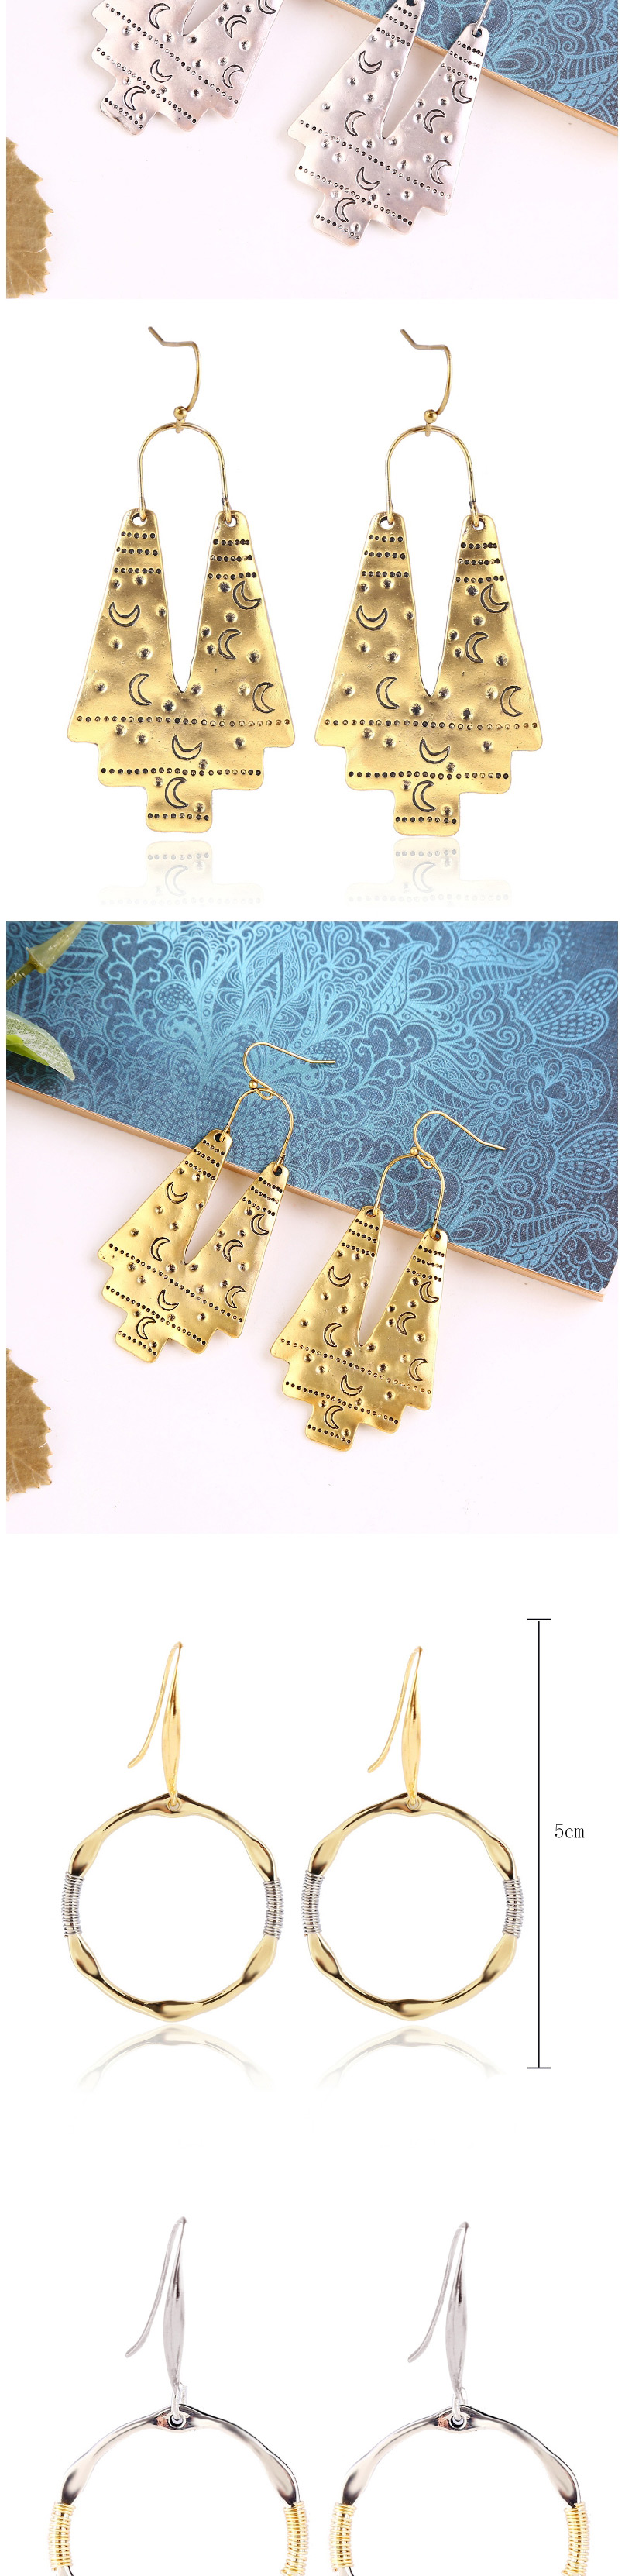 Fashion Silver Alloy Pearl Sun Flower Geometric Earrings,Drop Earrings